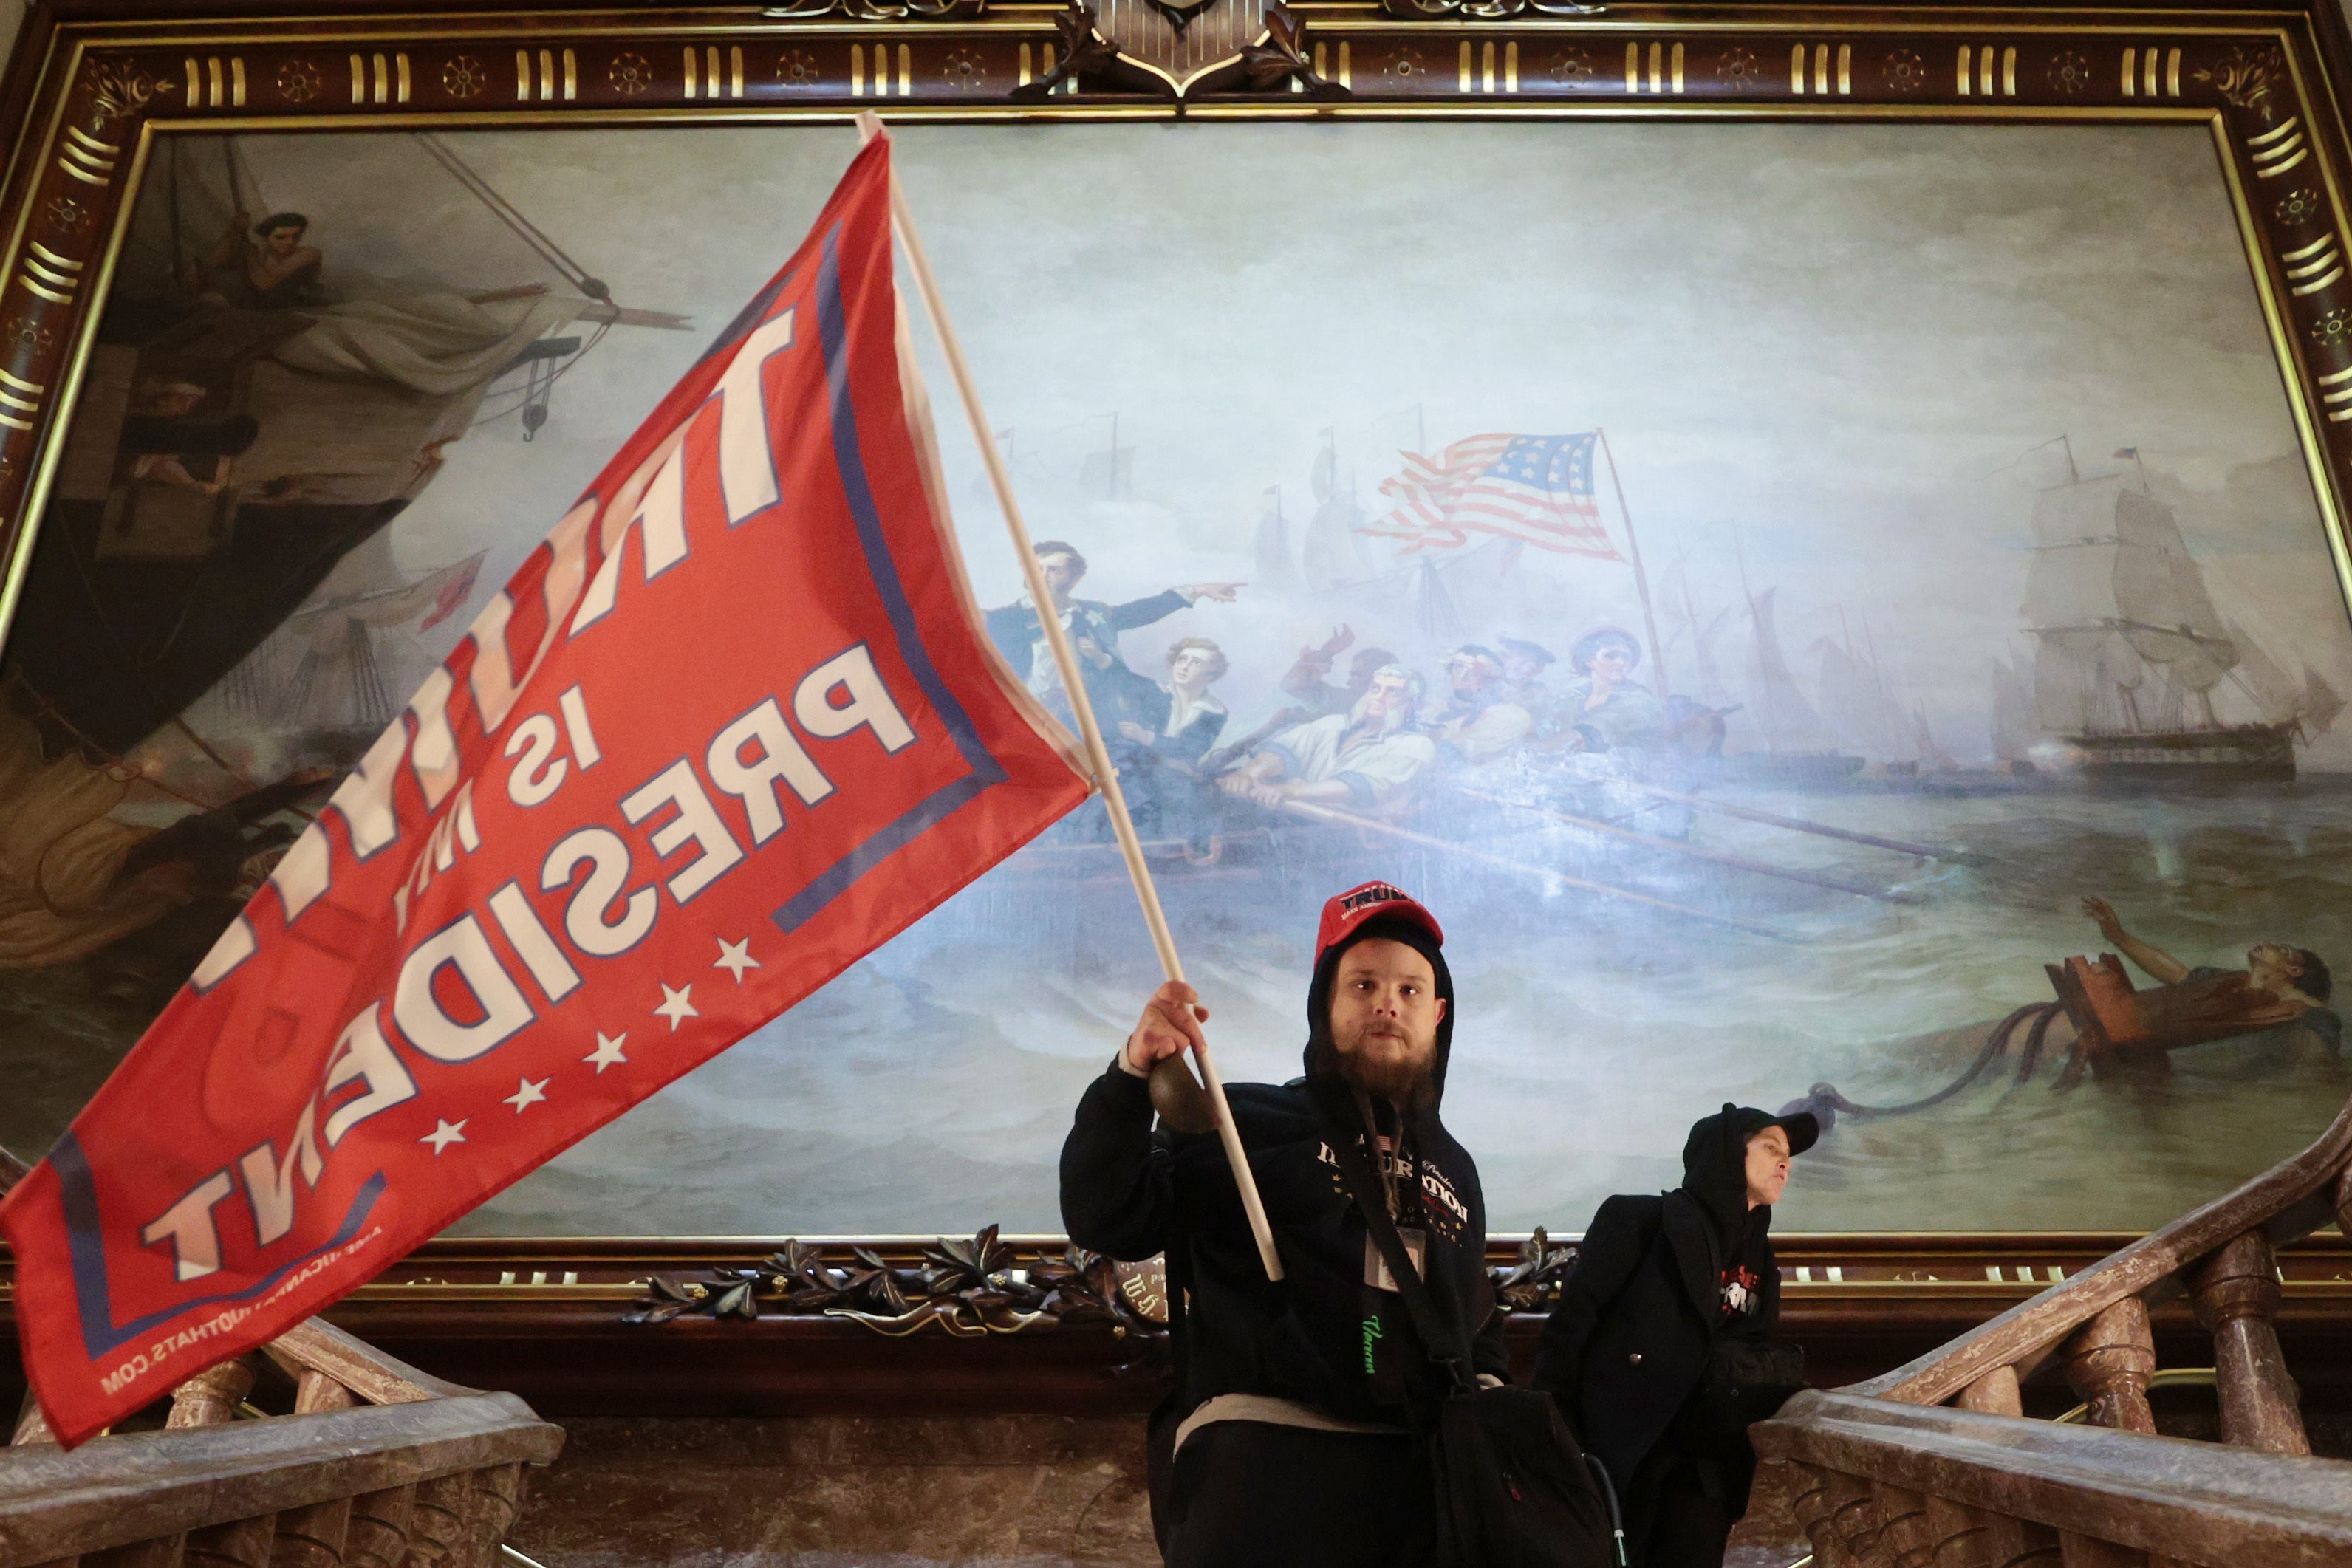 Un manifestante fue fotografiado ondeando una bandera de Trump frente a una enorme obra de arte del siglo XIX dentro del edificio del Capitolio.